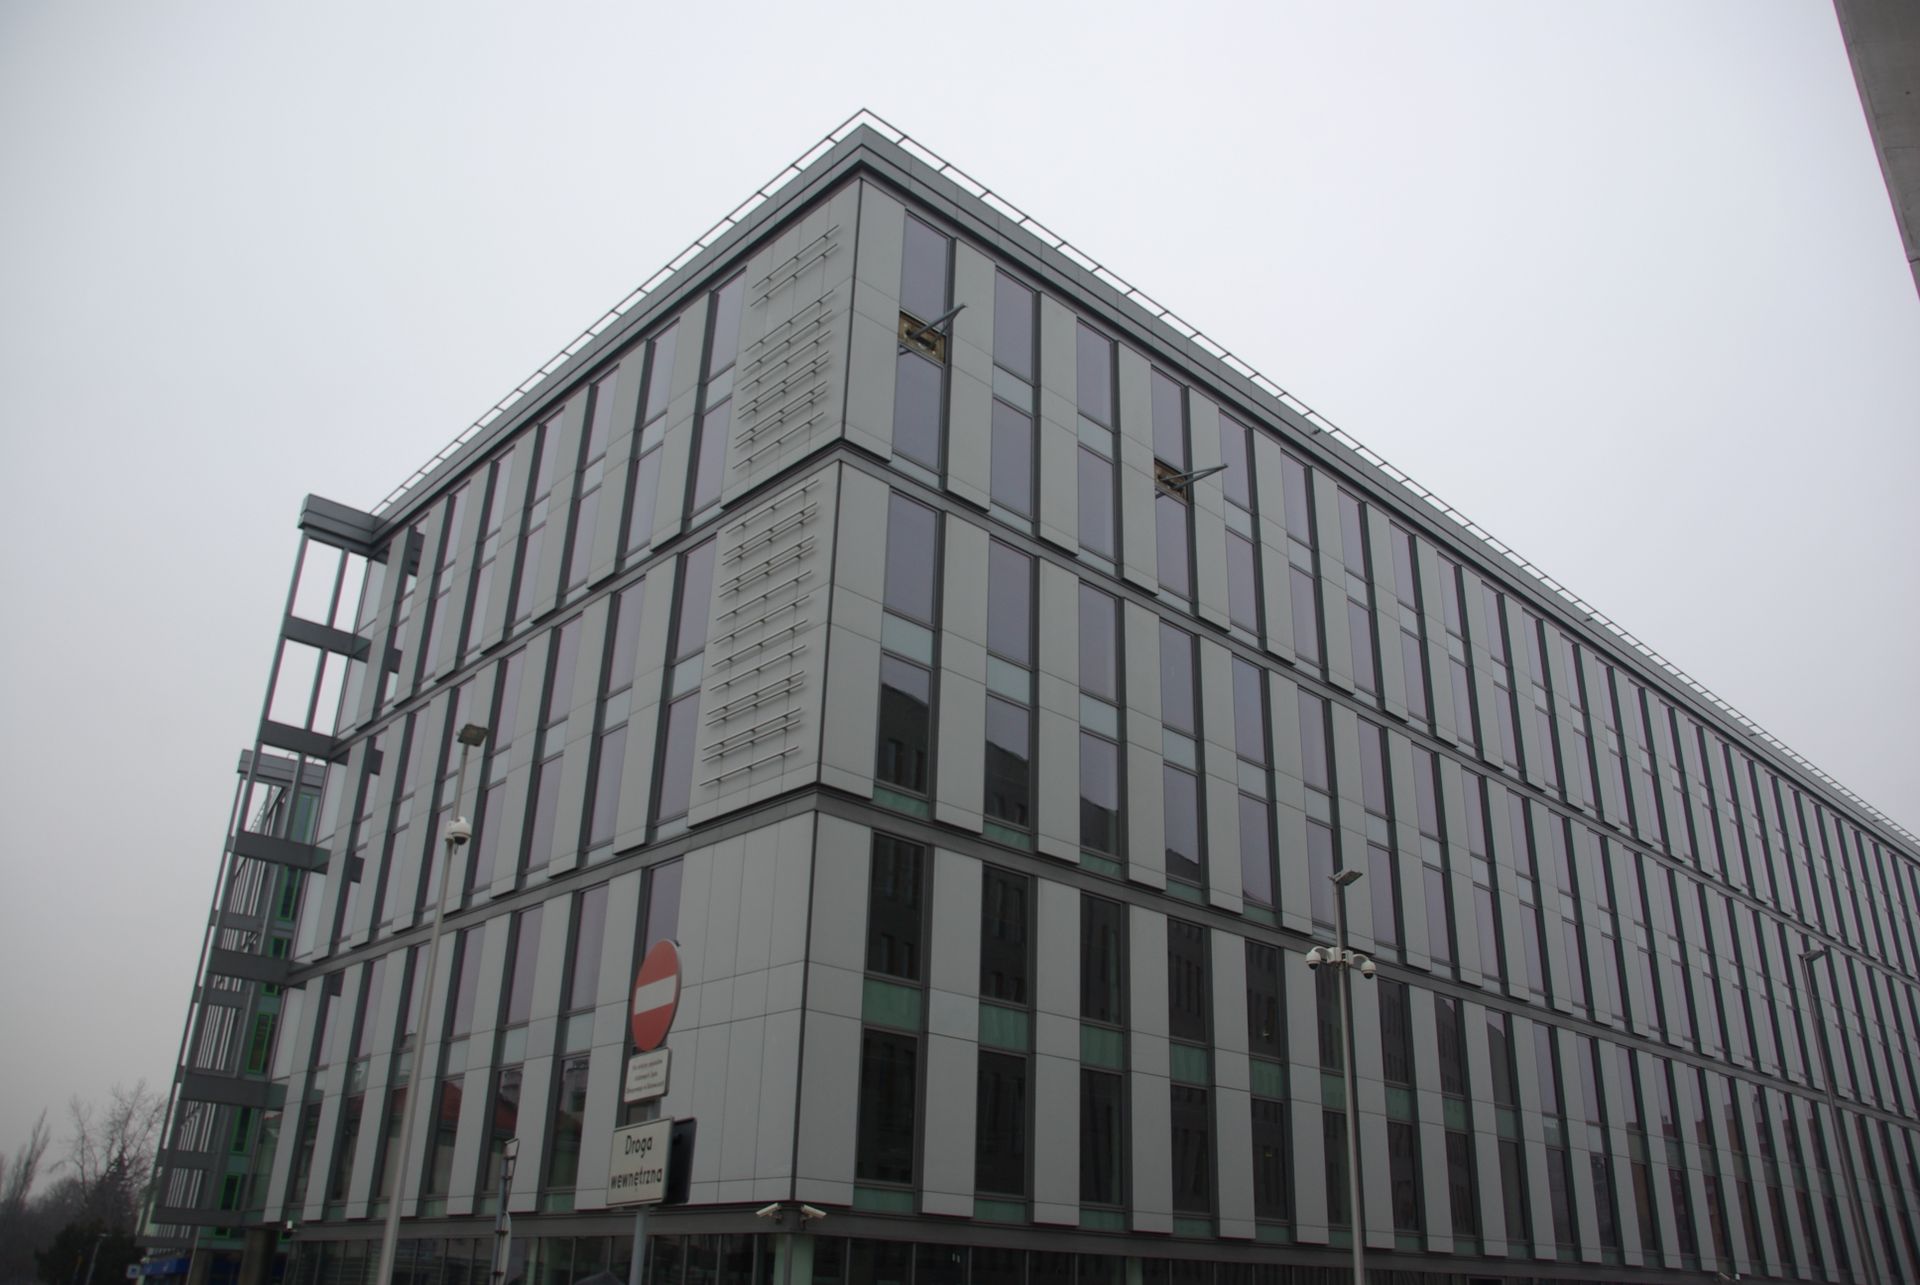  Nowa siedziba Krajowego Rejestru Długów Biuro Informacji Gospodarczej SA w Katowicach